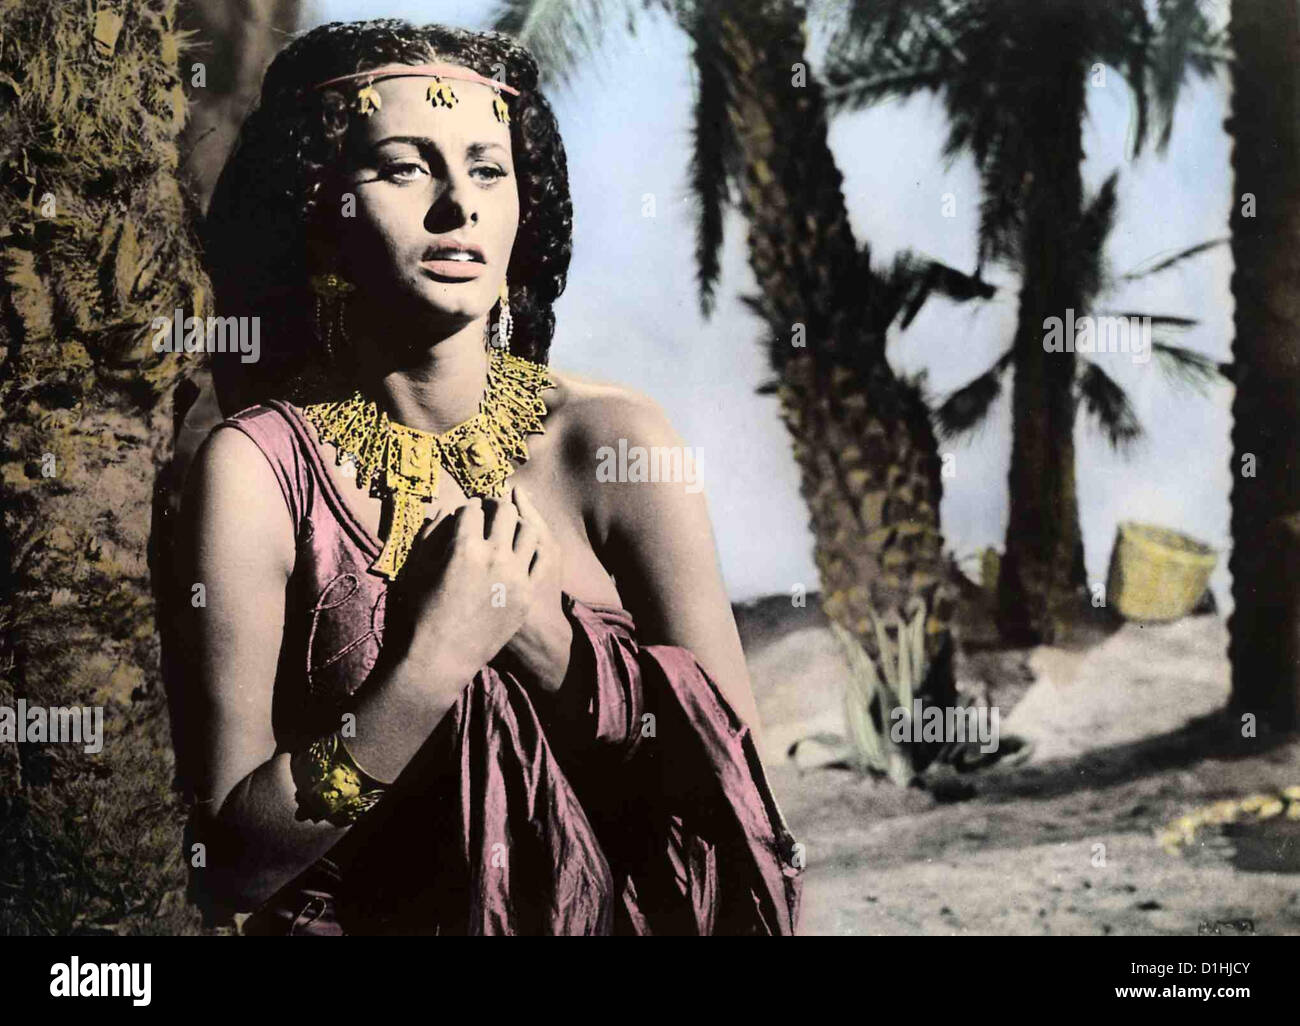 Aida  Aida  Sophia Loren Die aethiopische Koenigstochter Aida (Sophia Loren) muss als Sklavin der Prinzessin Amneris dienen. Stock Photo